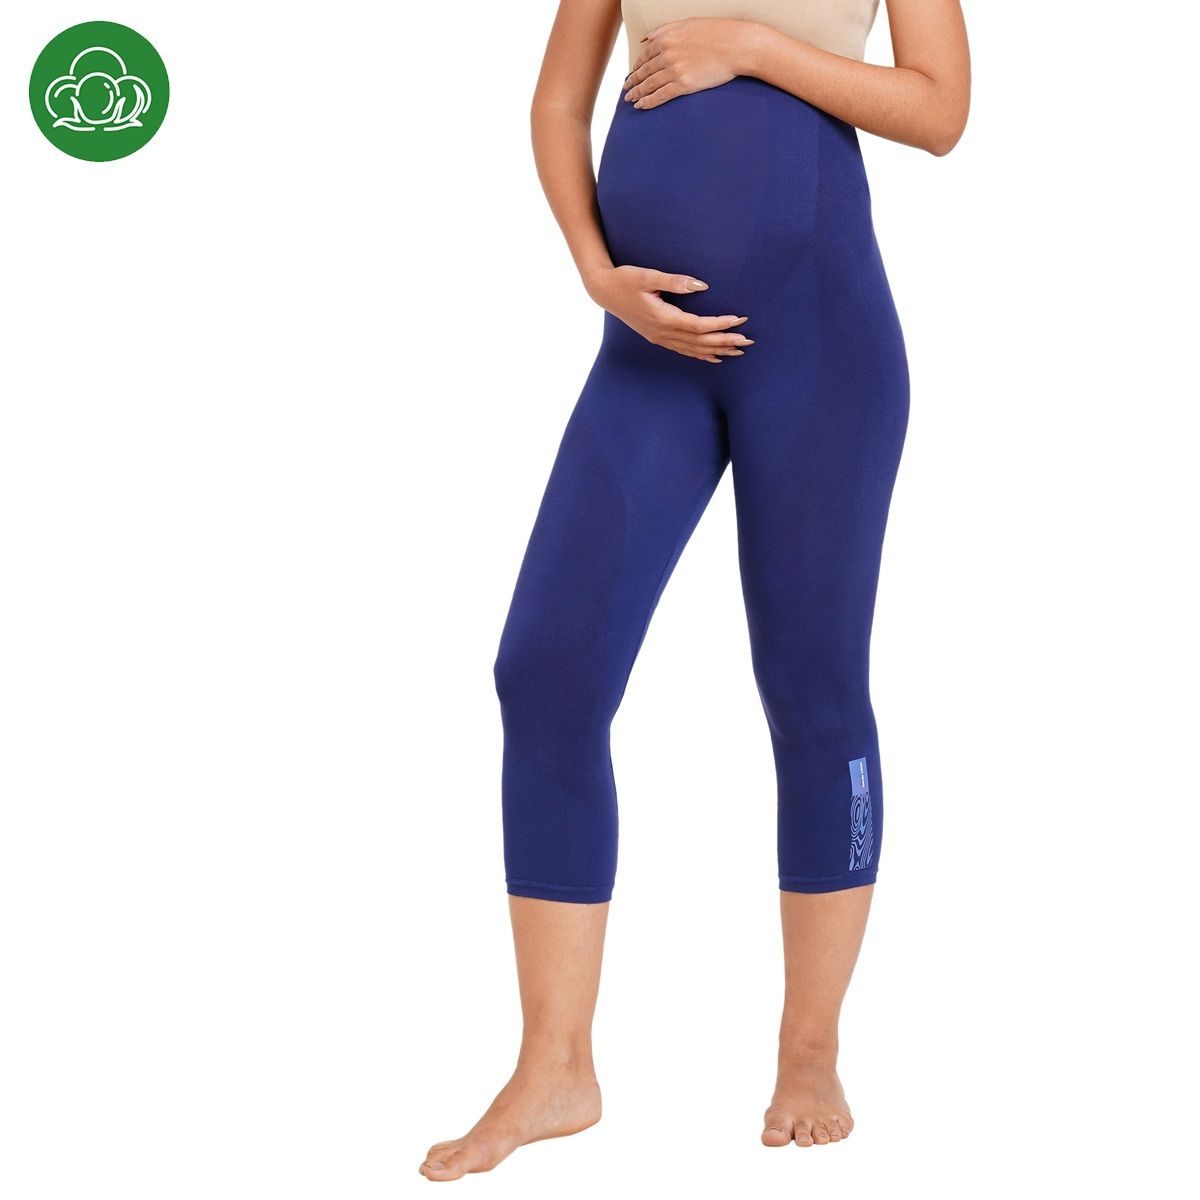 Maternity Wear Leggings  Buy Maternity Wear Leggings online in India